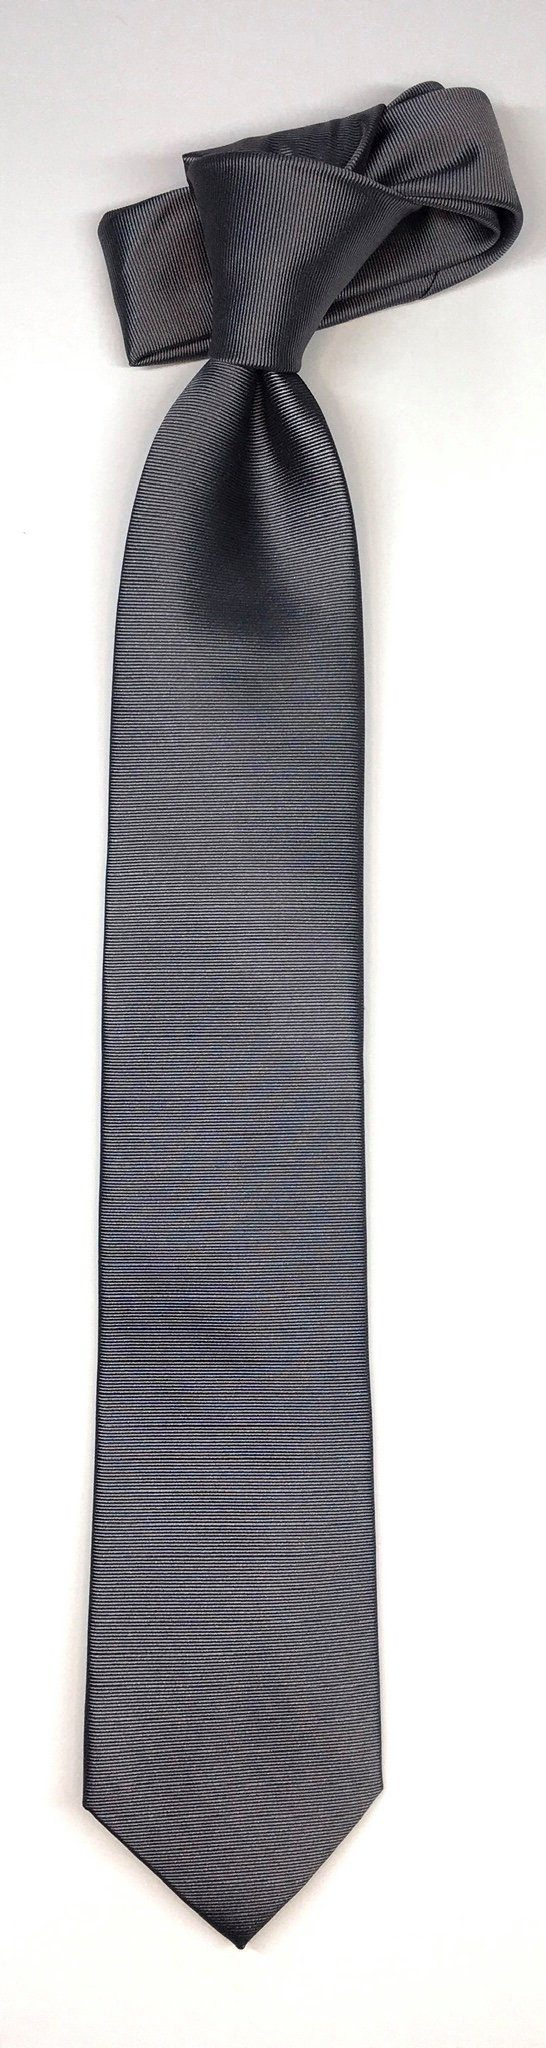 Seidenfalter edlen Seidenfalter Silber Krawatte Krawatte Uni Design Uni im 7cm Krawatte Seidenfalter